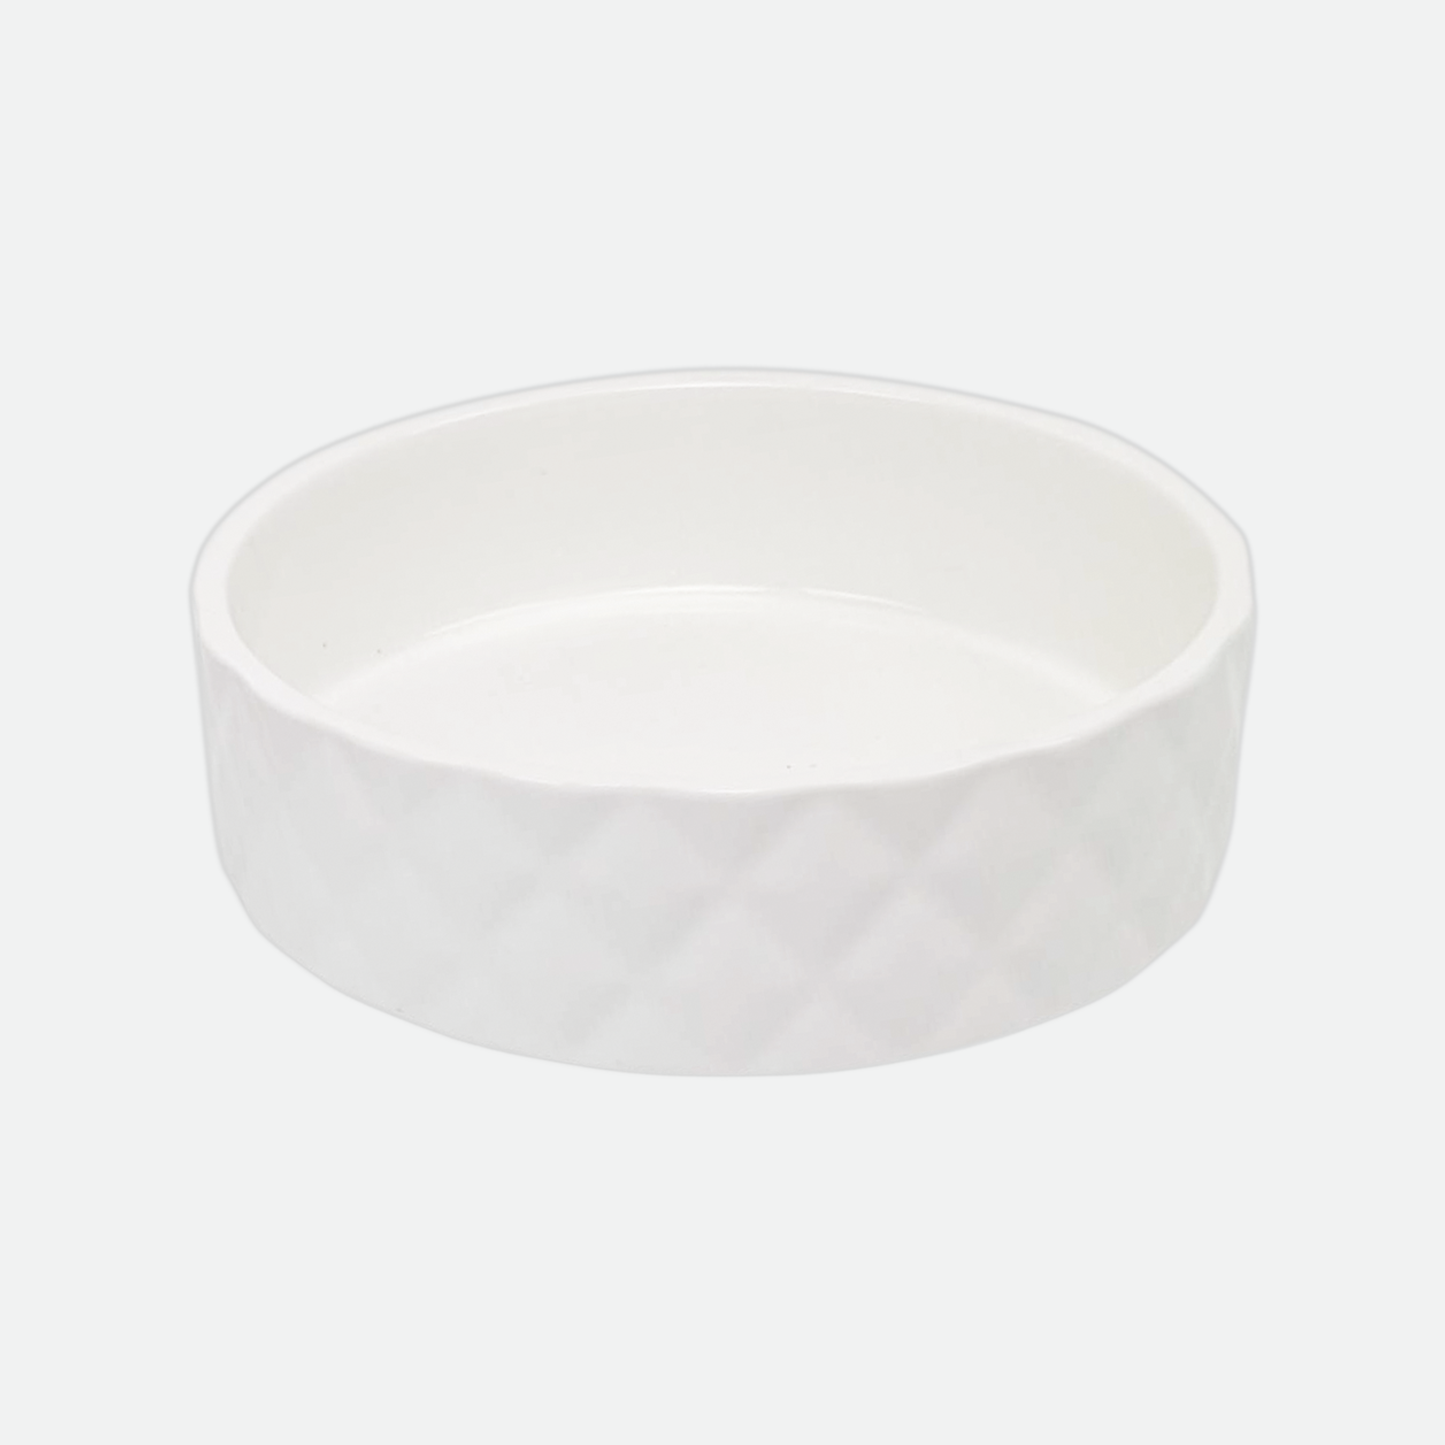 Ceramic bowl for pet, white